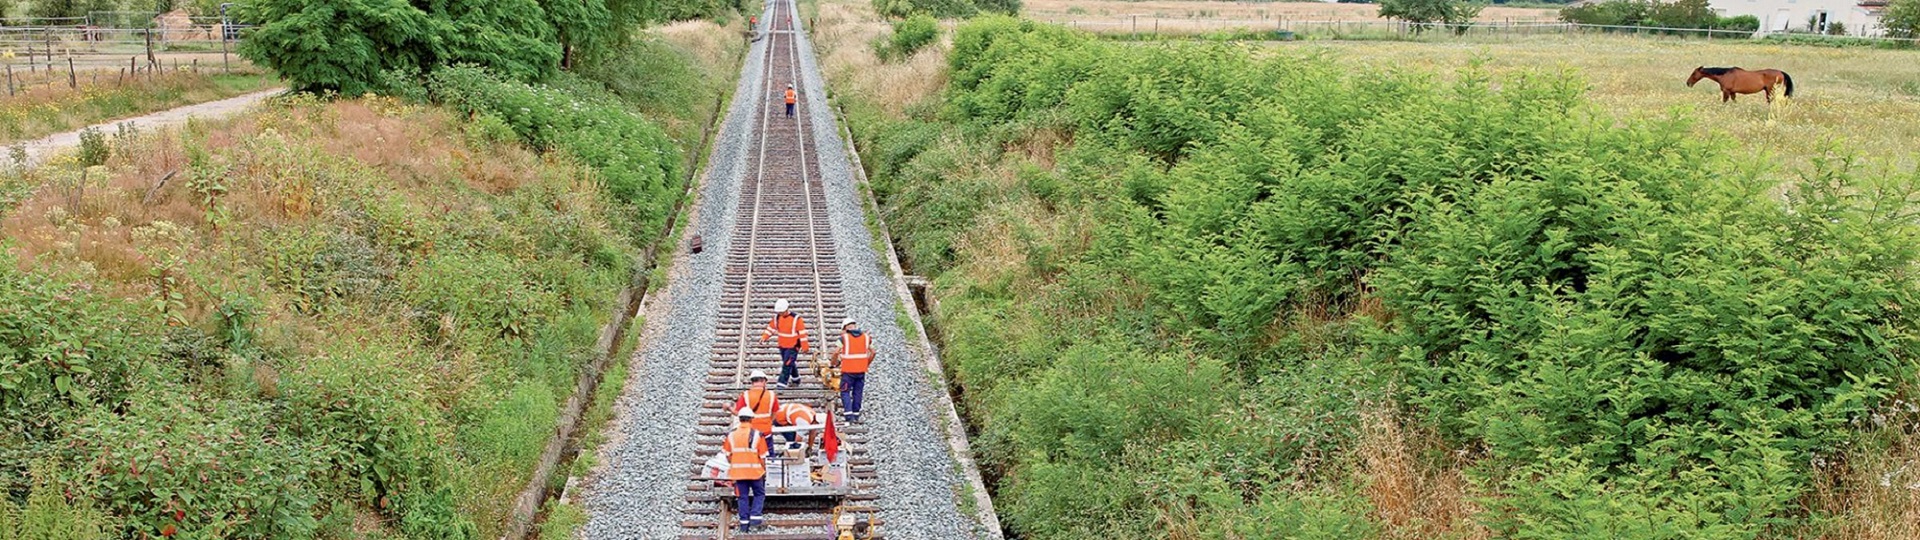 SNCF Réseau: Austausch zuverlässiger Daten und bewährter Verfahren zur Optimierung des Managements des französischen Schienennetzes